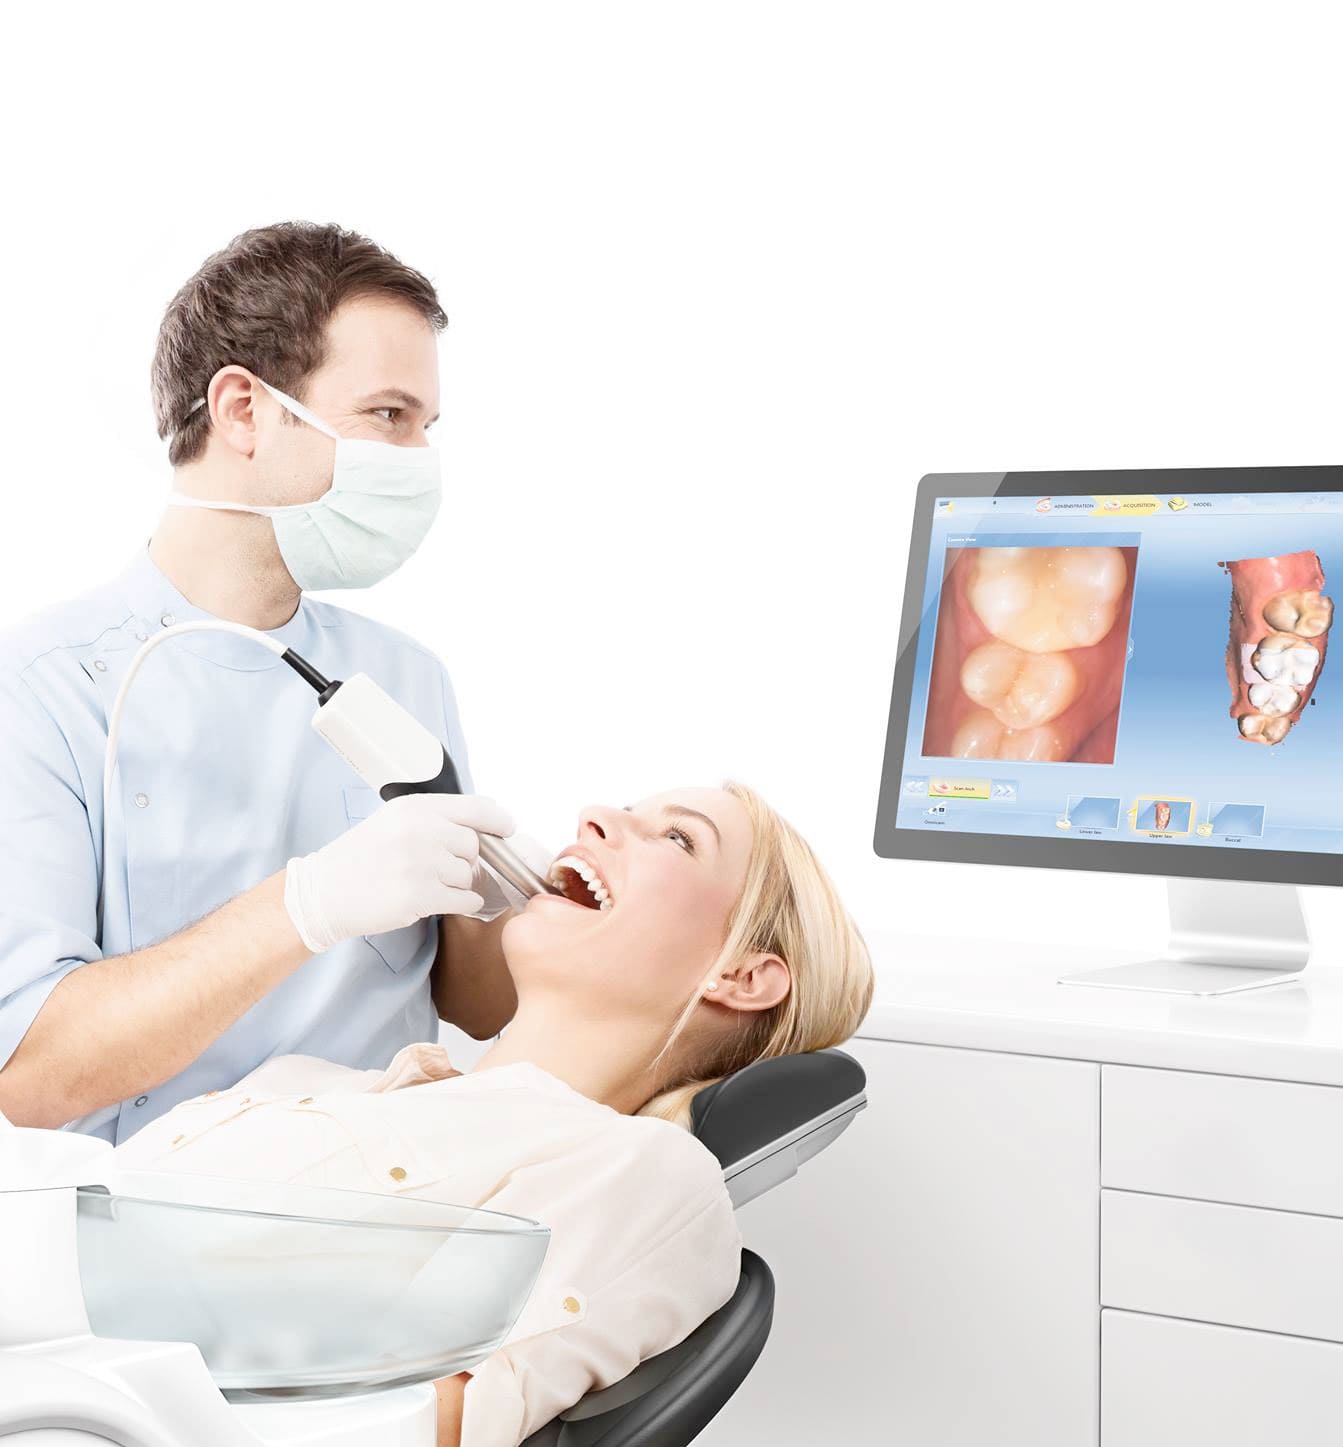 Стоматологическая диагностическая визуализация с помощью ультразвука безболезненна, доступна, неинвазивна и не имеет известных побочных эффектов.